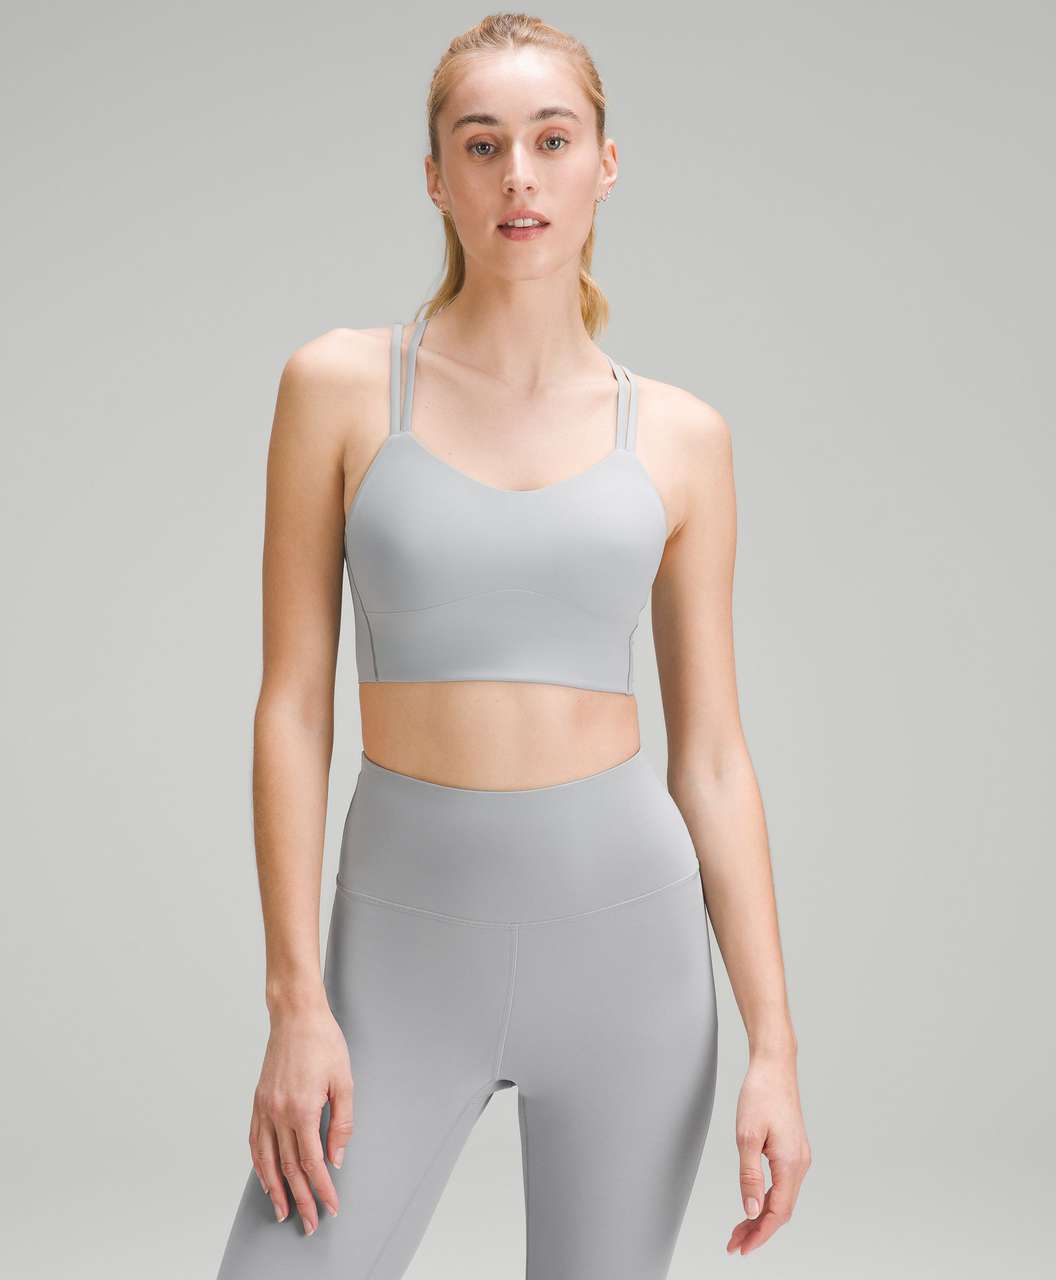 lululemon athletica, Intimates & Sleepwear, Grey And Coral Lululemon  Sports Bra Size 6